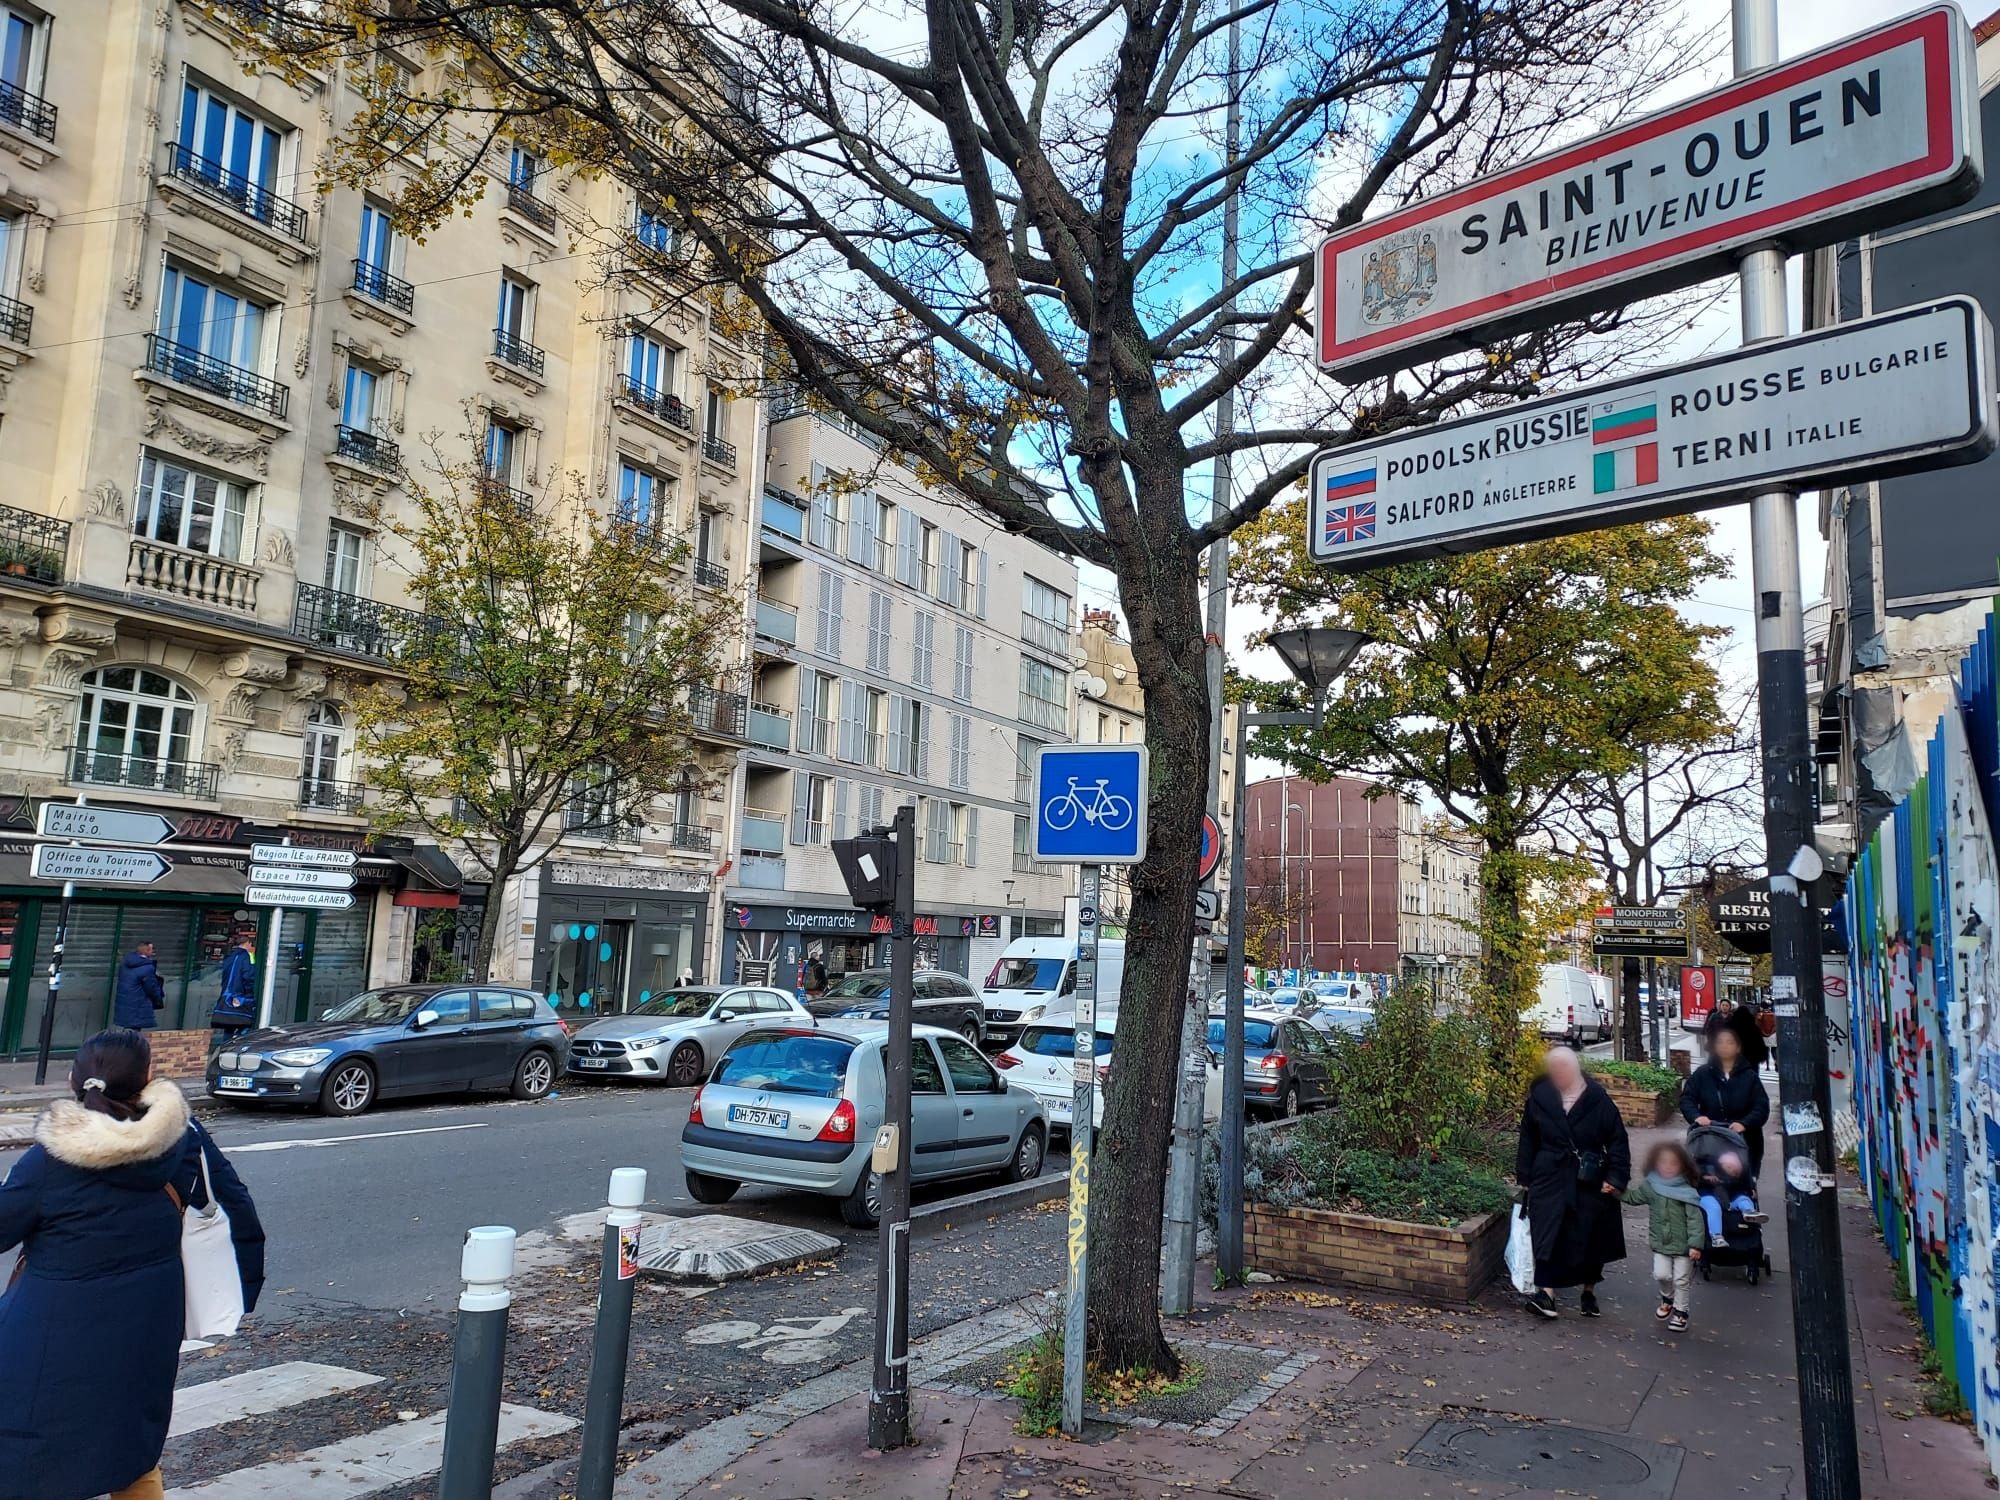 Saint-Ouen (Seine-Saint-Denis), le 20 novembre. Le panneau d'entrée de la ville souhaite toujours la bienvenue à Saint-Ouen et non à Saint-Ouen-sur-Seine, son véritable nom depuis novembre 2018. LP/A.L.